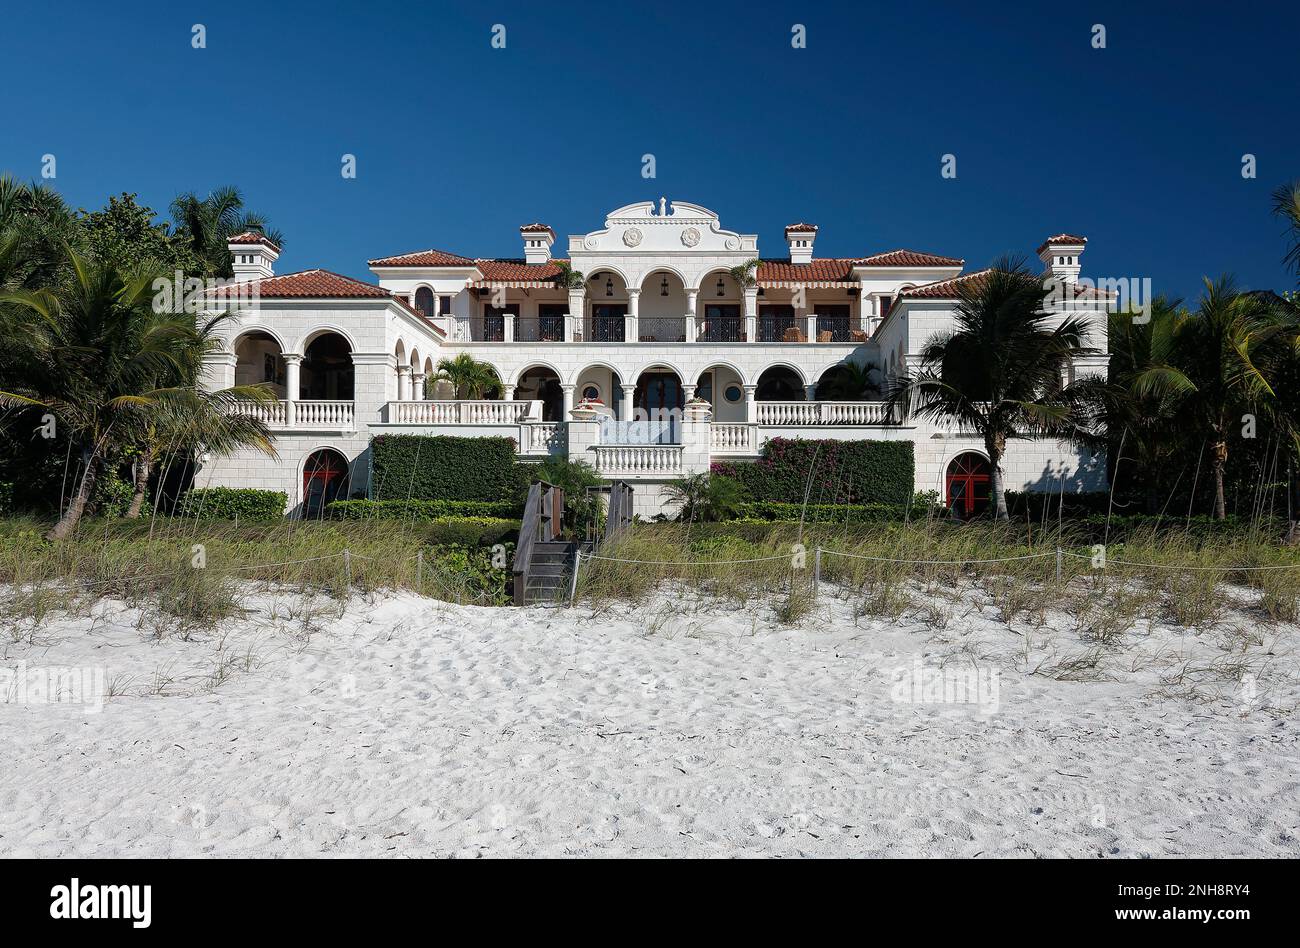 maison palatiale, pierre blanche, toit en terre cuite, de nombreuses arches, de longs balcons, front de mer, sable, palmiers, haut de gamme, attrayant, Floride, Naples, Floride, wi Banque D'Images